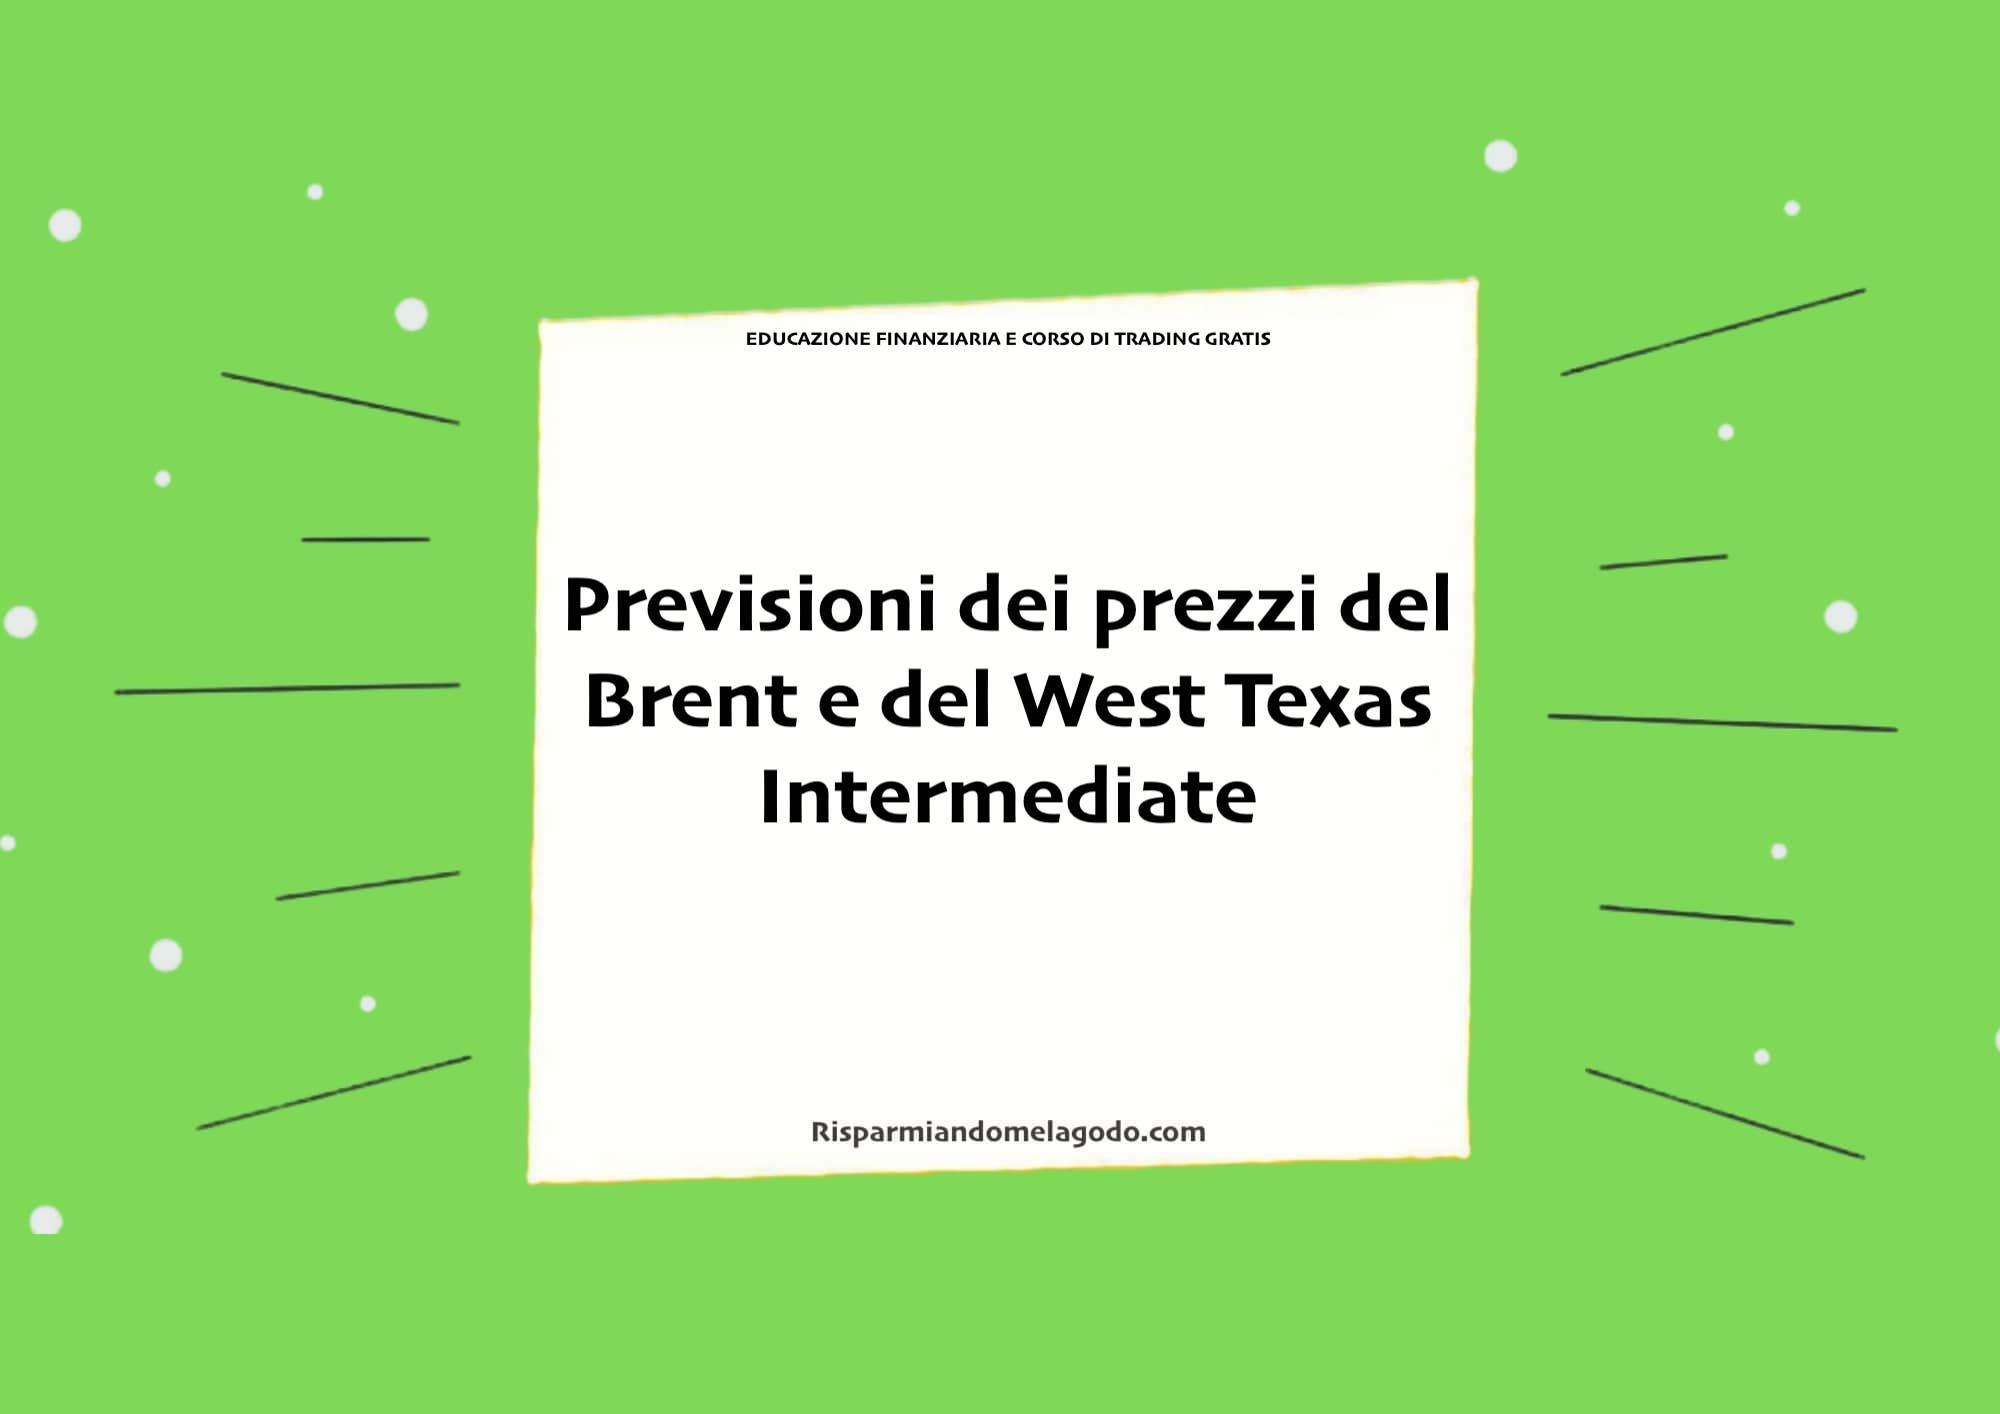 Previsioni dei prezzi del Brent e del West Texas Intermediate